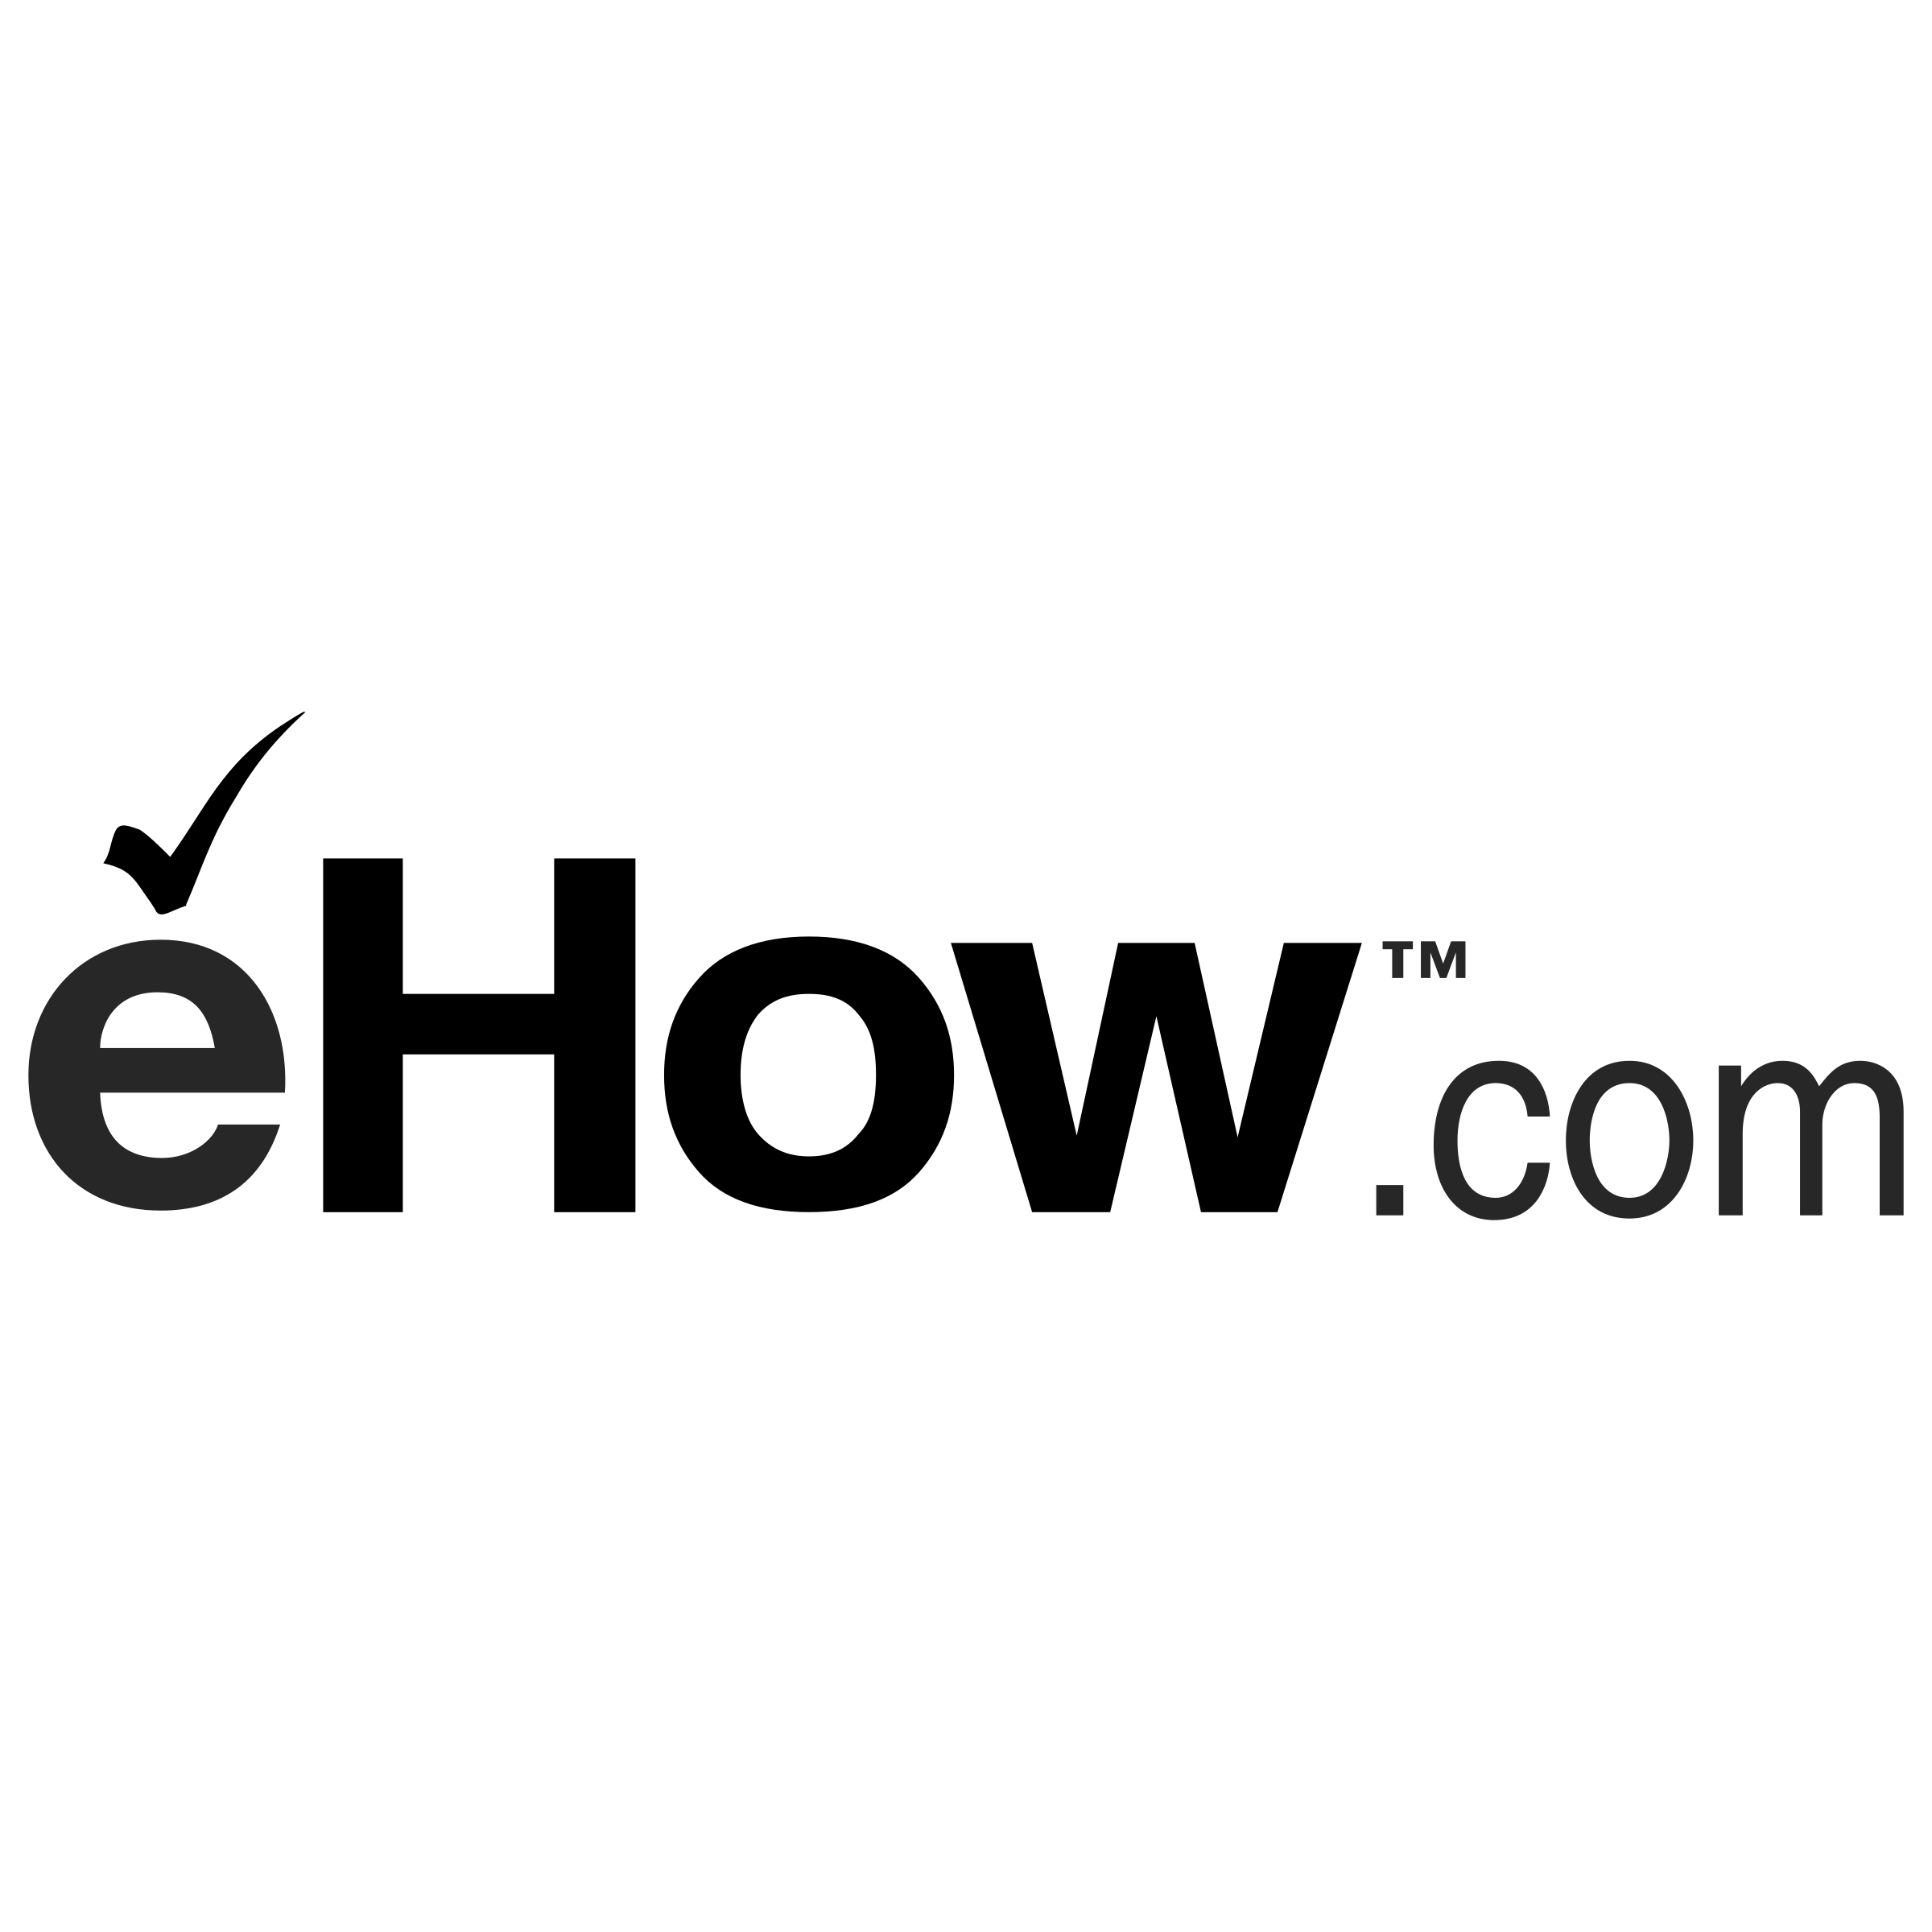 eHow Logo - eHow com Logo PNG Transparent & SVG Vector - Freebie Supply